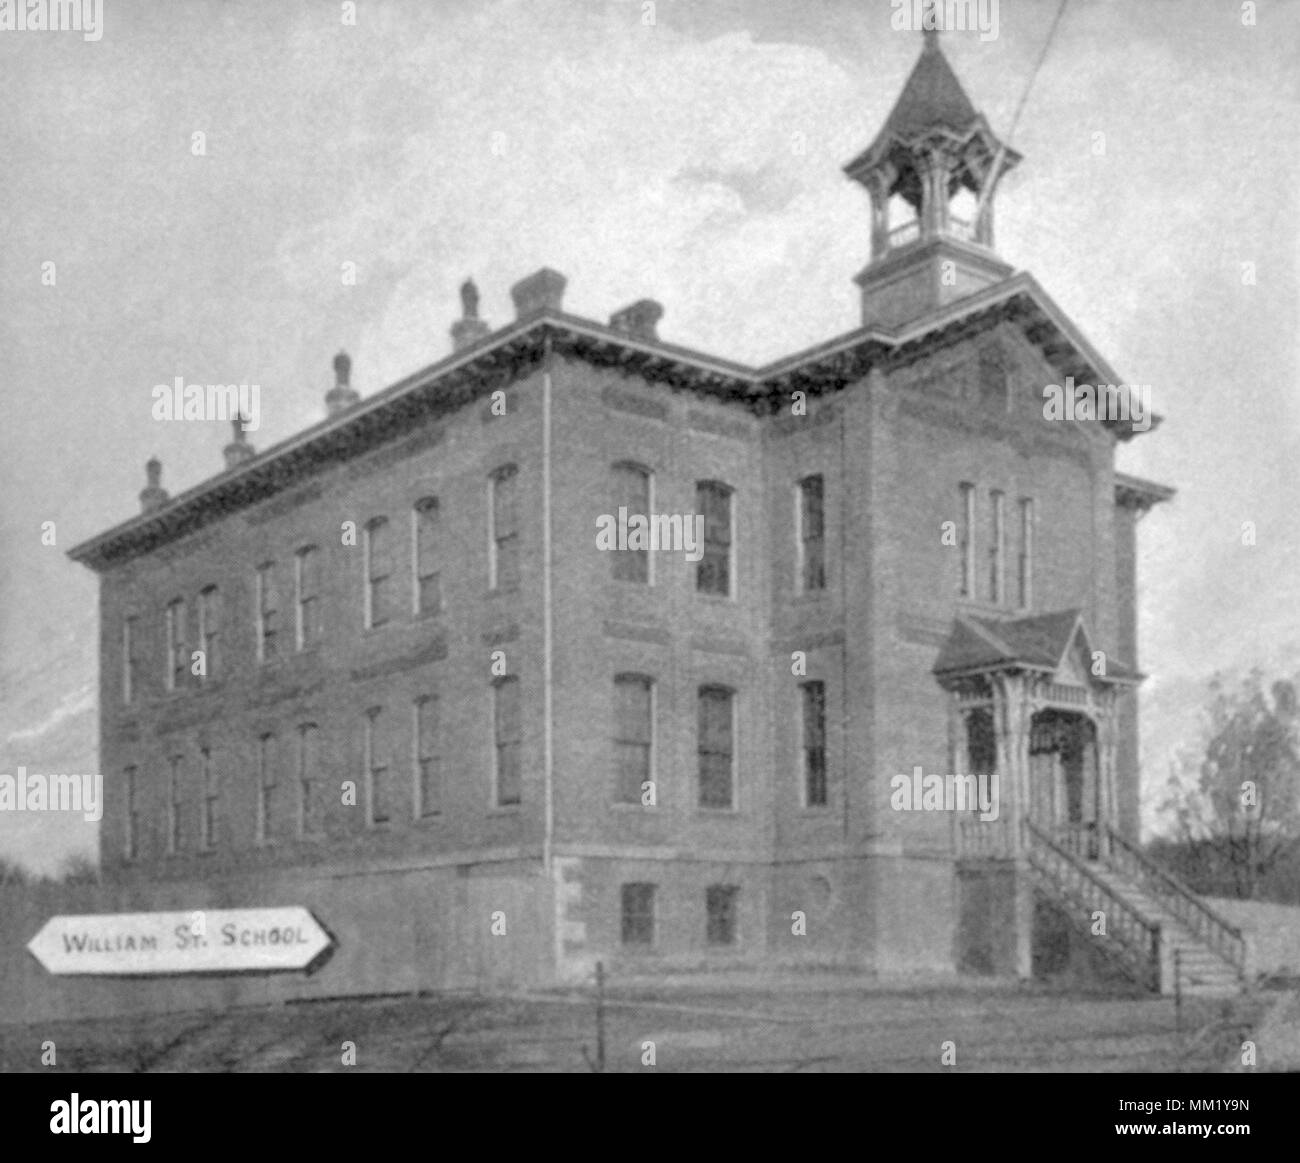 L'École de la rue William. Stamford. 1892 Banque D'Images